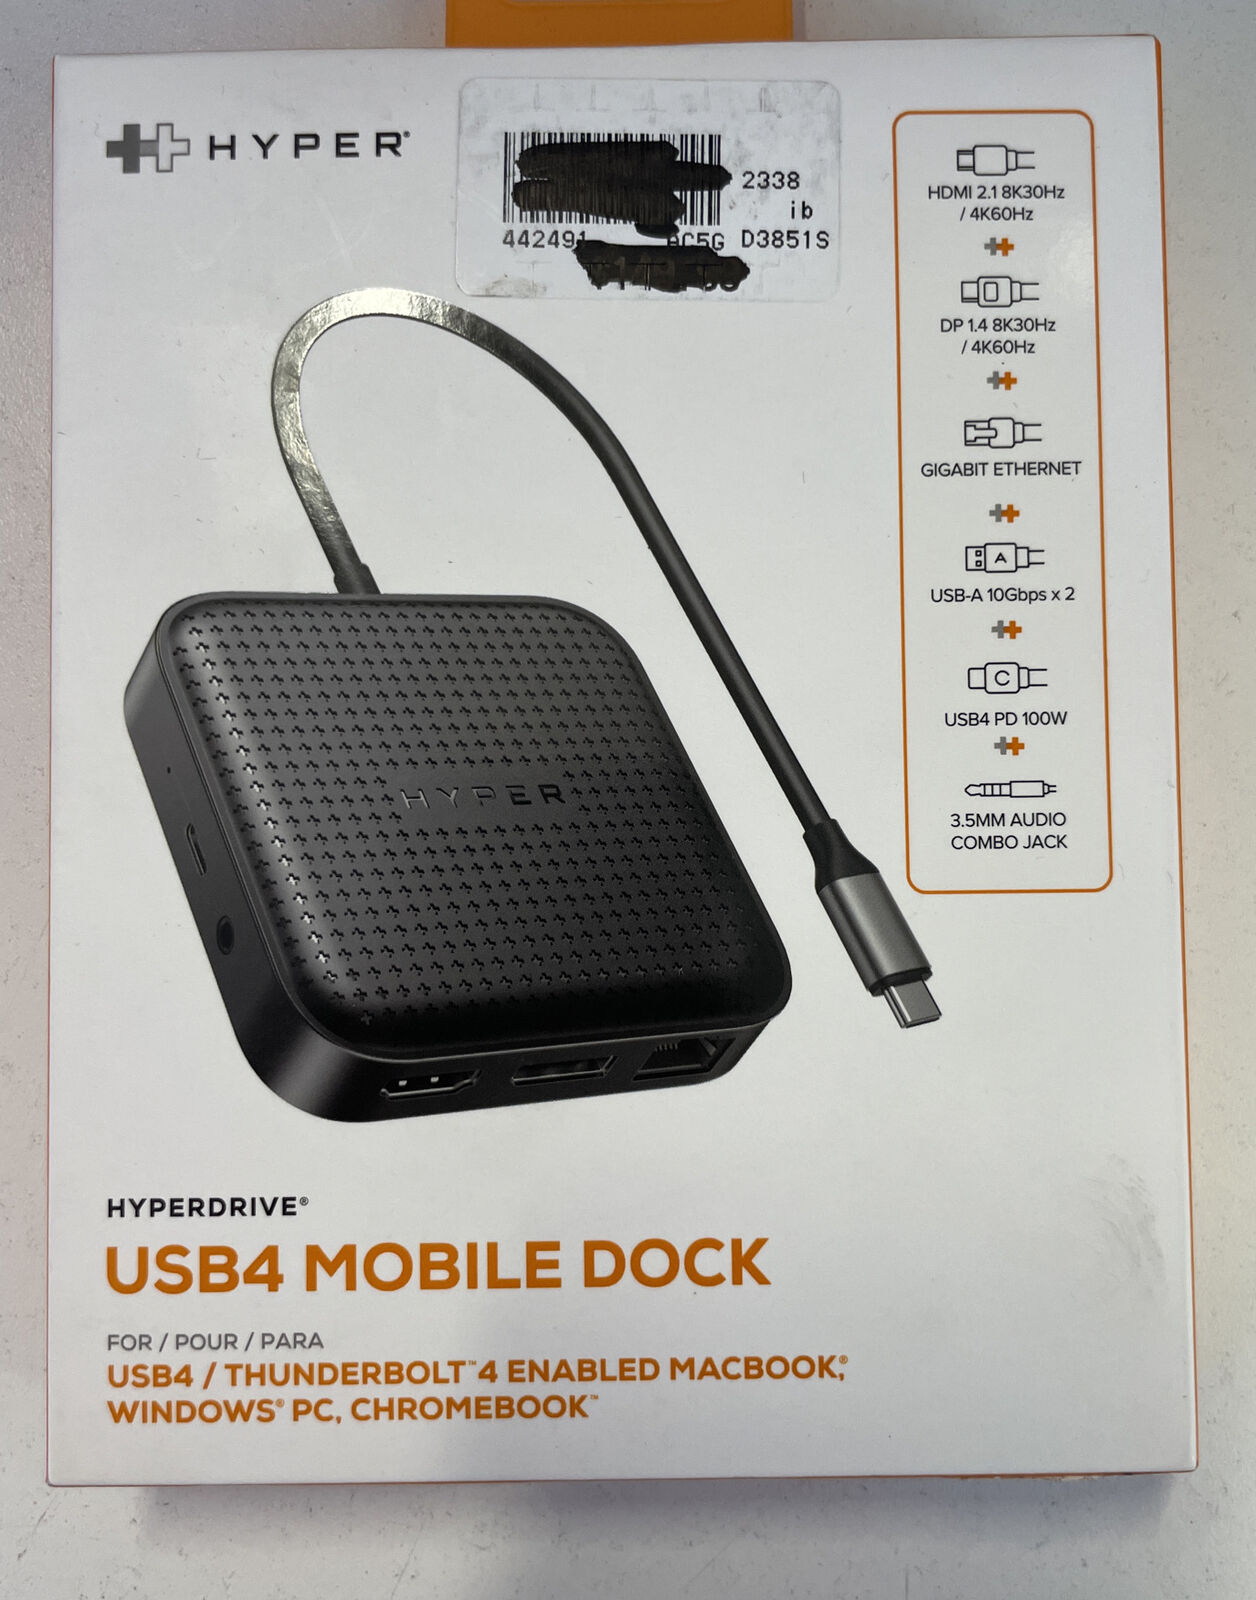 hyperdrive usb4/ thunderbolt 4 mobile dock for macbook, windows pc, chromebook